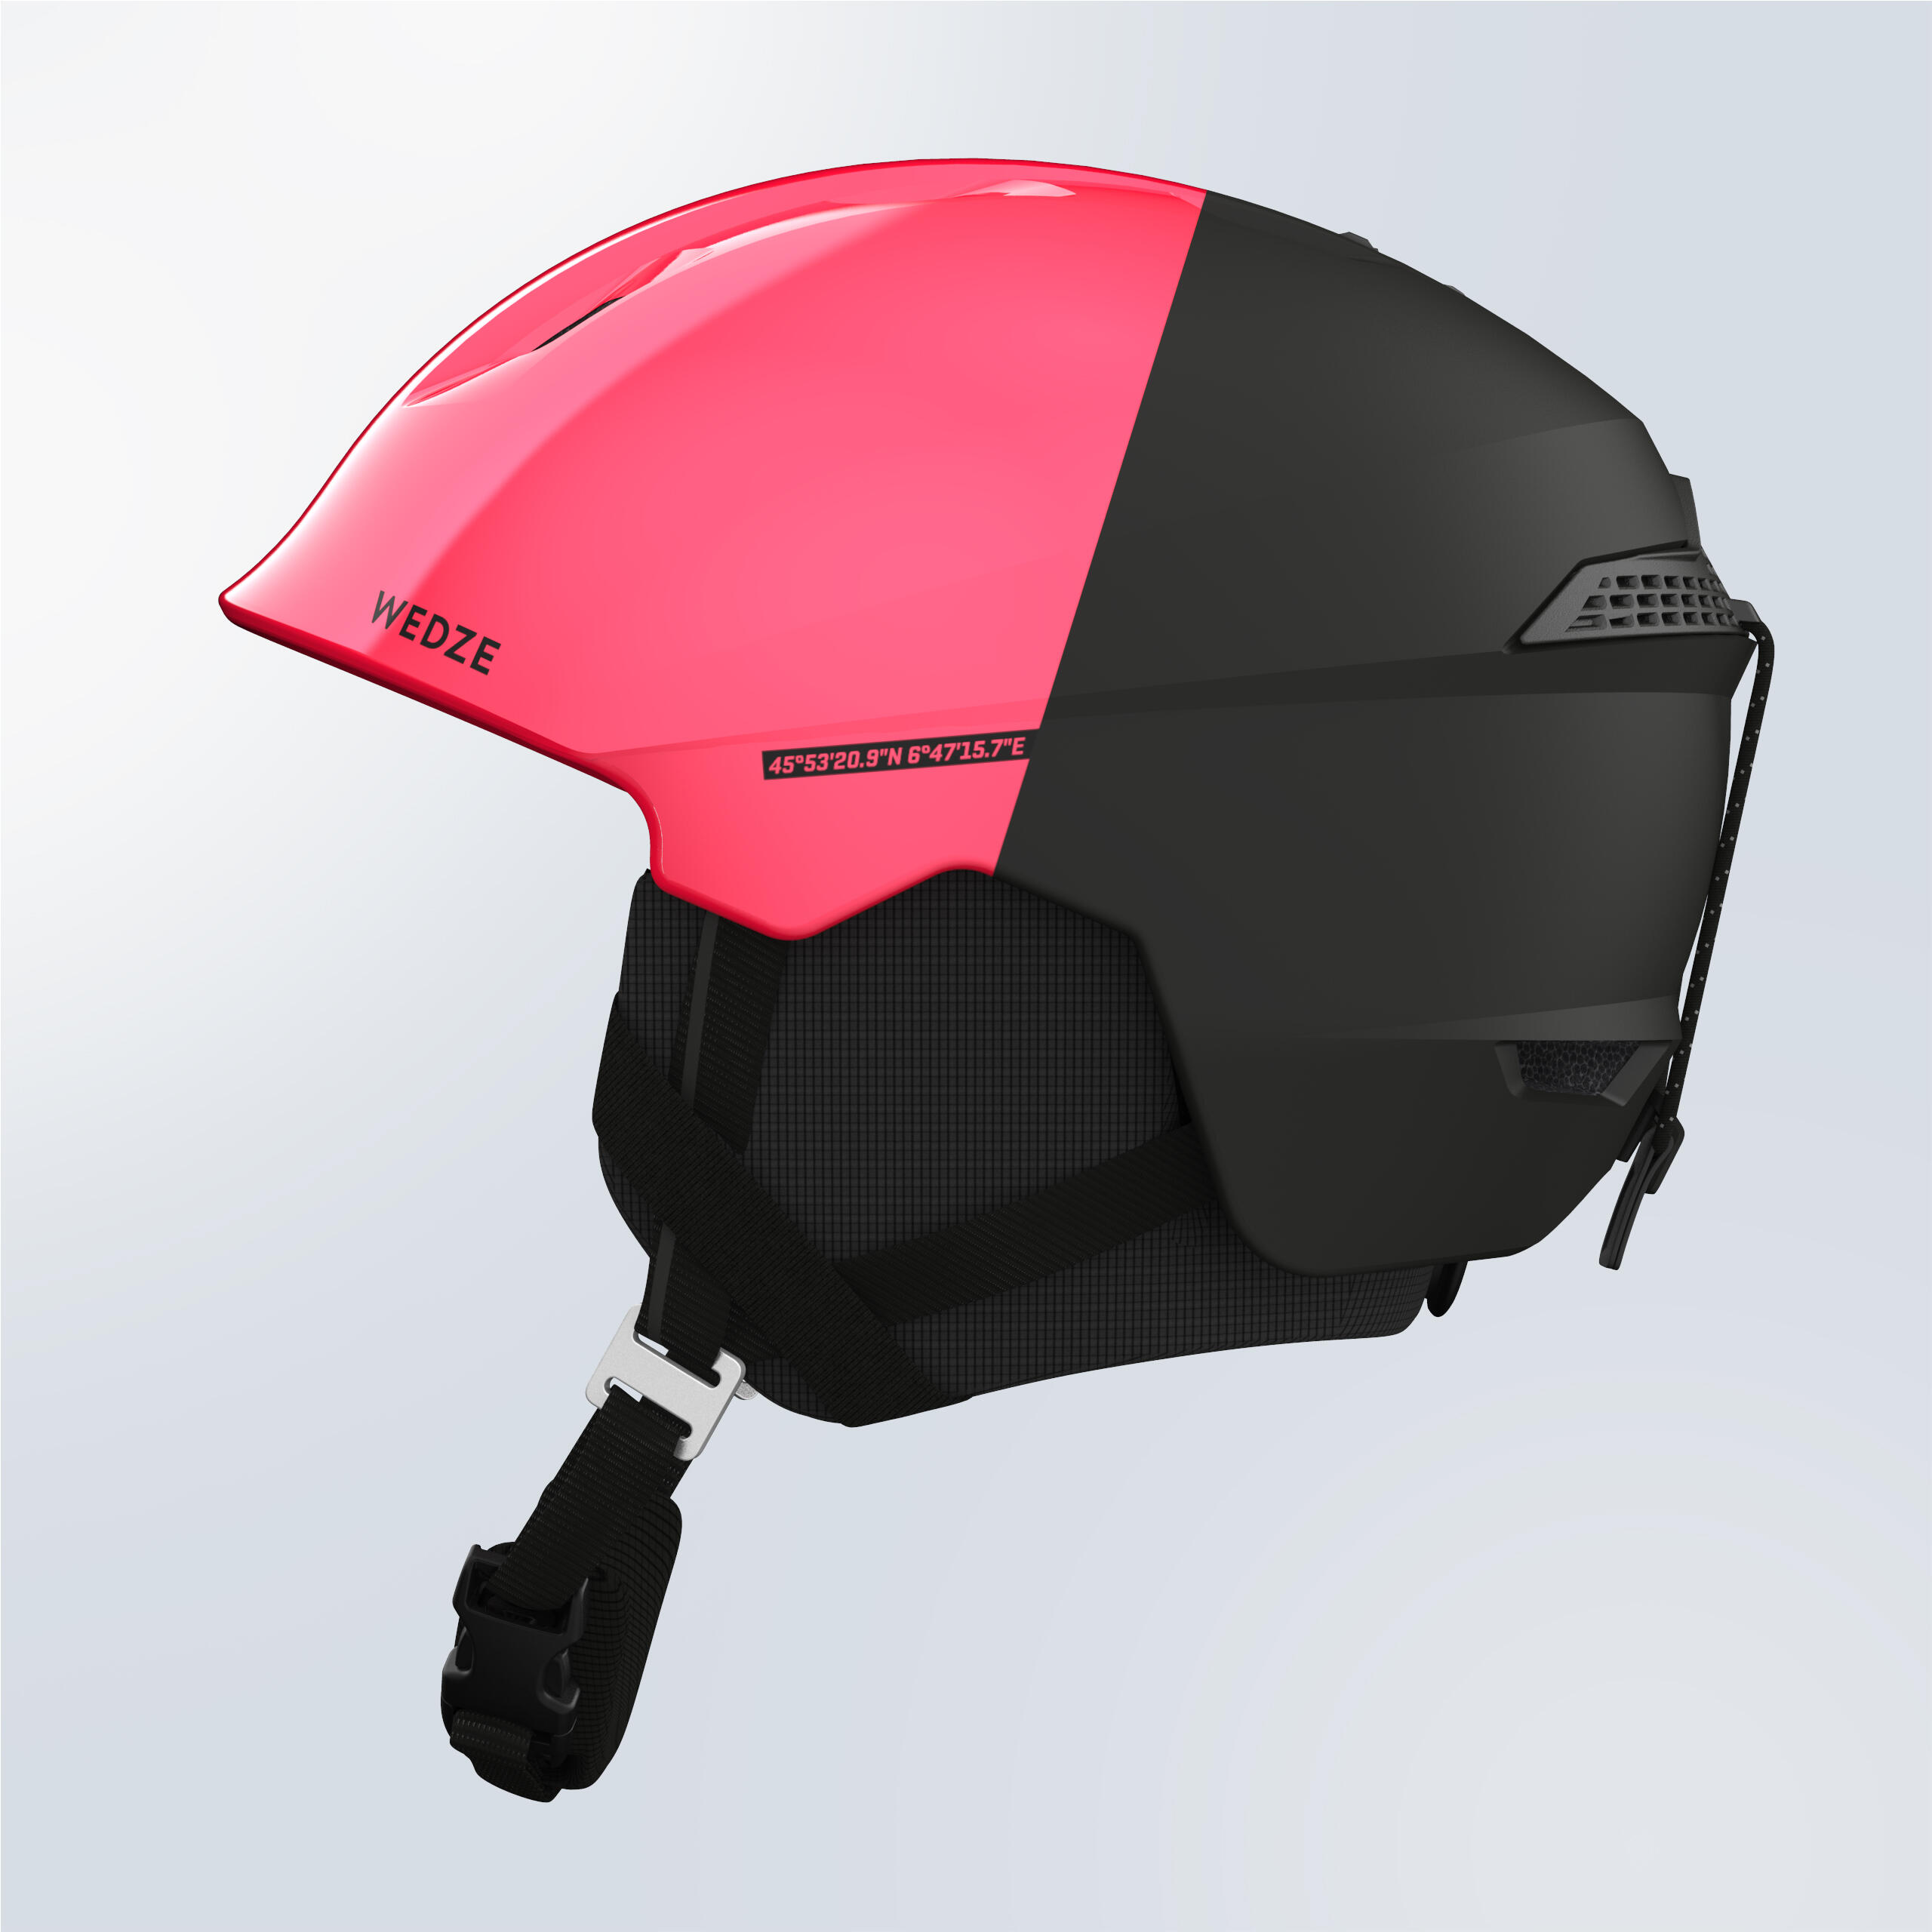 Adult PST 580 Ski Helmet - Pink and Black 5/9